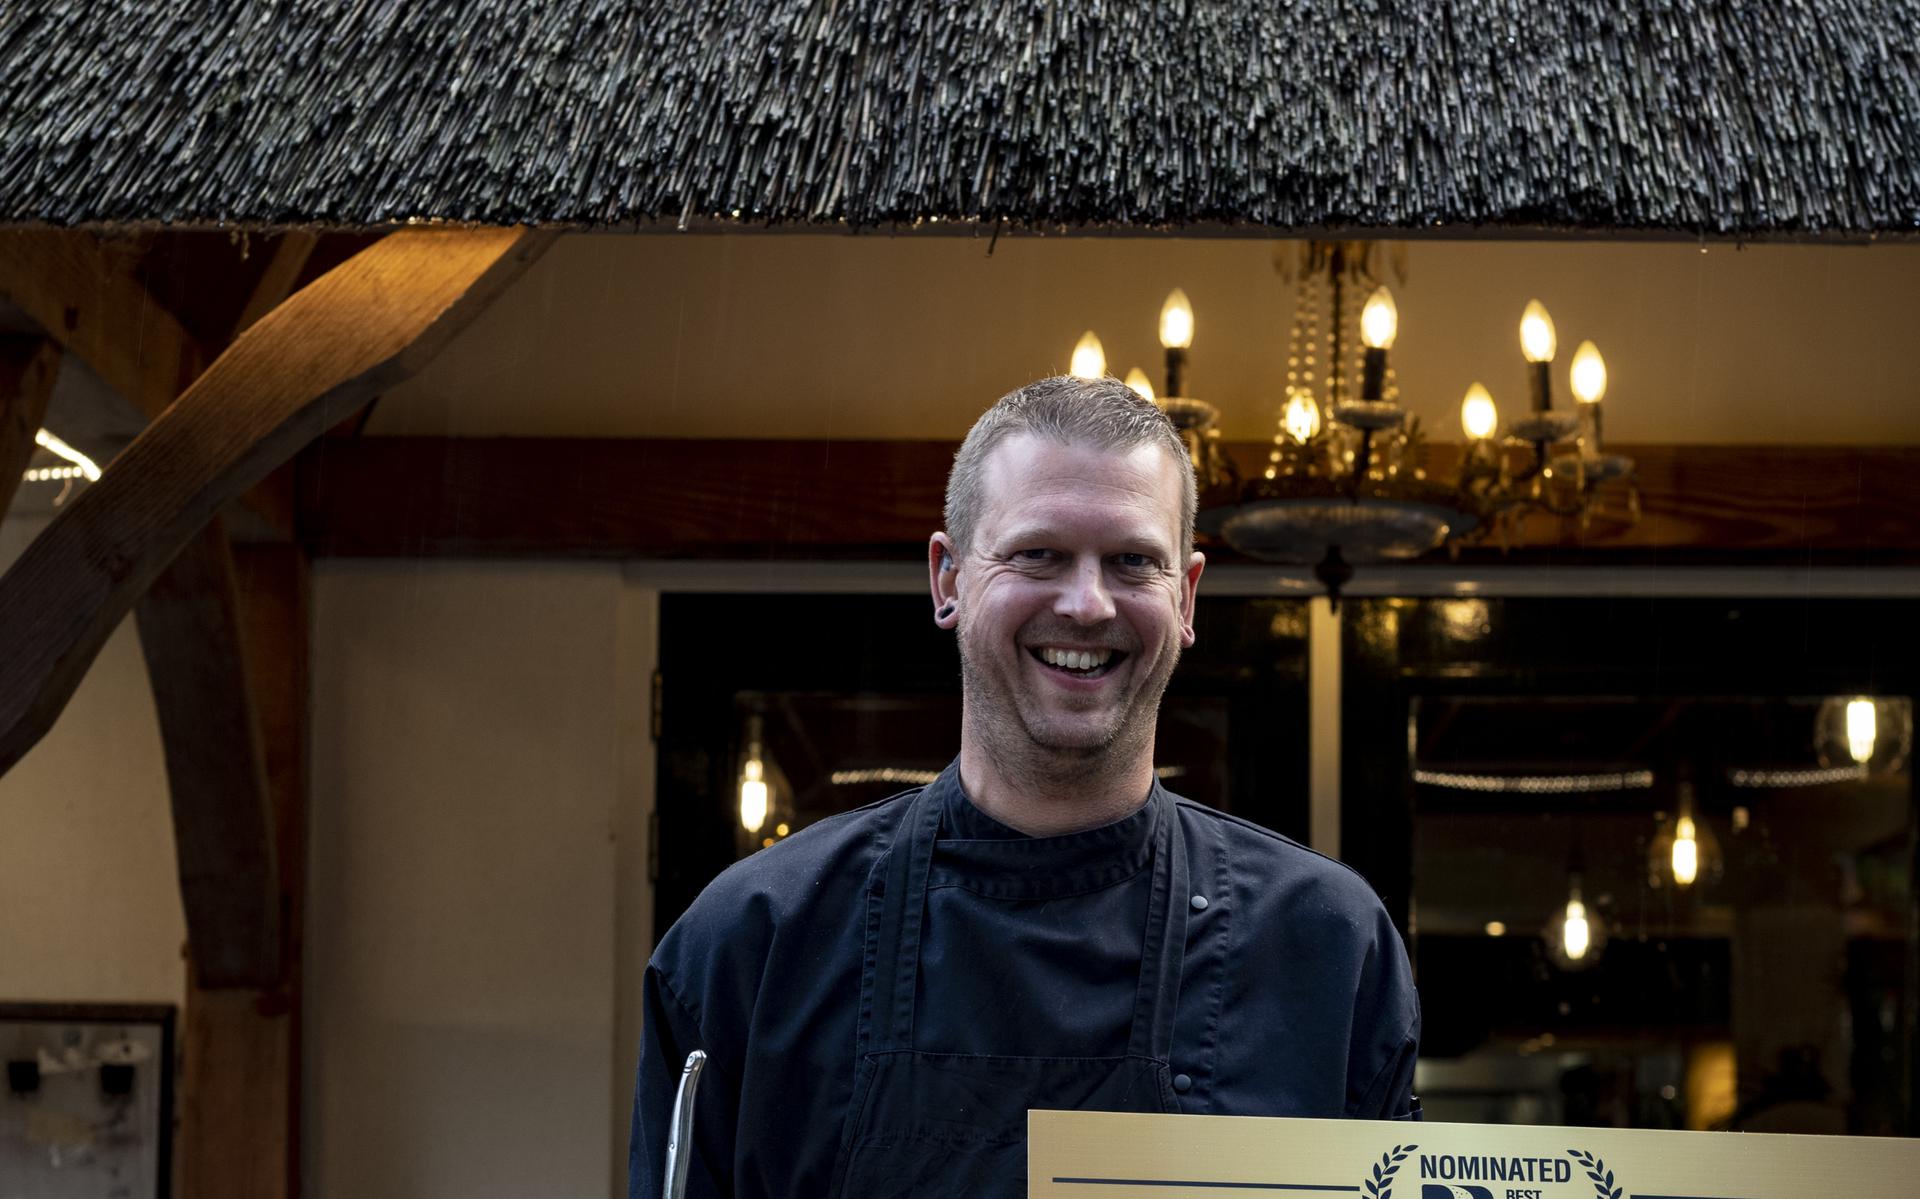 Chef Arno Greefhorst van restaurant de Heerlijkheid uit De Bult deed mee met zijn vegetarische hamburger.